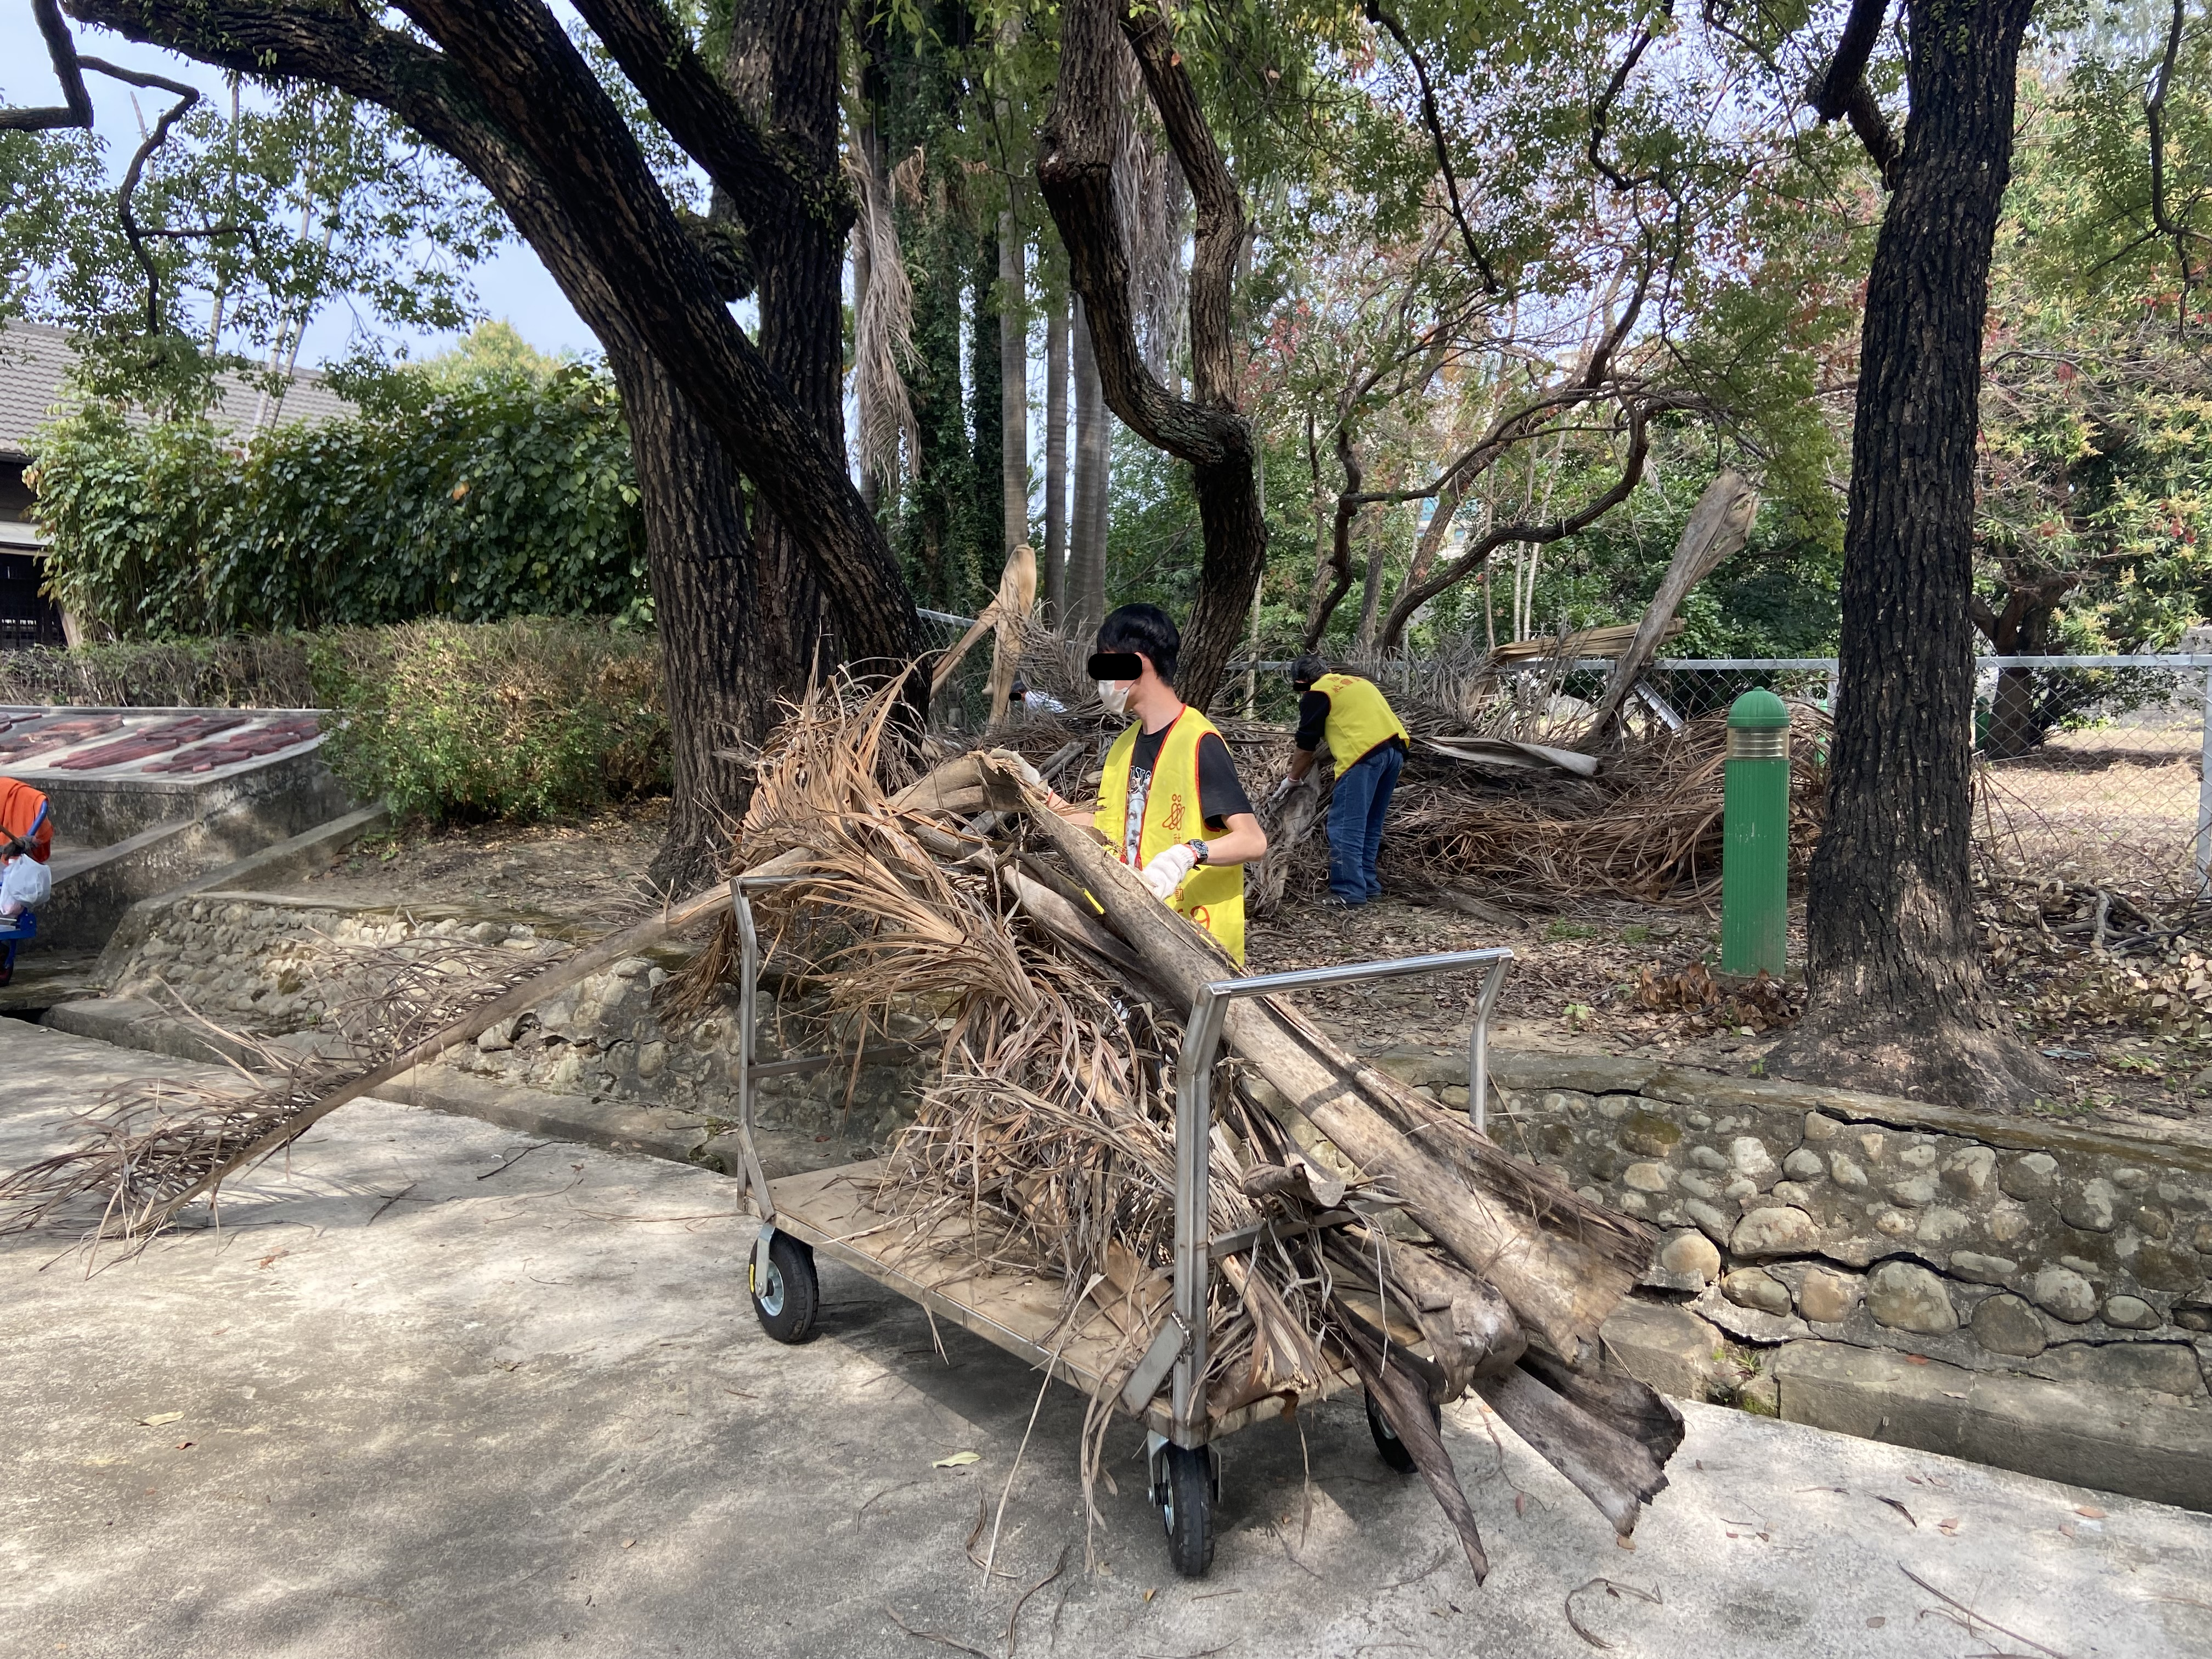 07勞動人協助搬運枯葉、樹枝至垃圾處理場